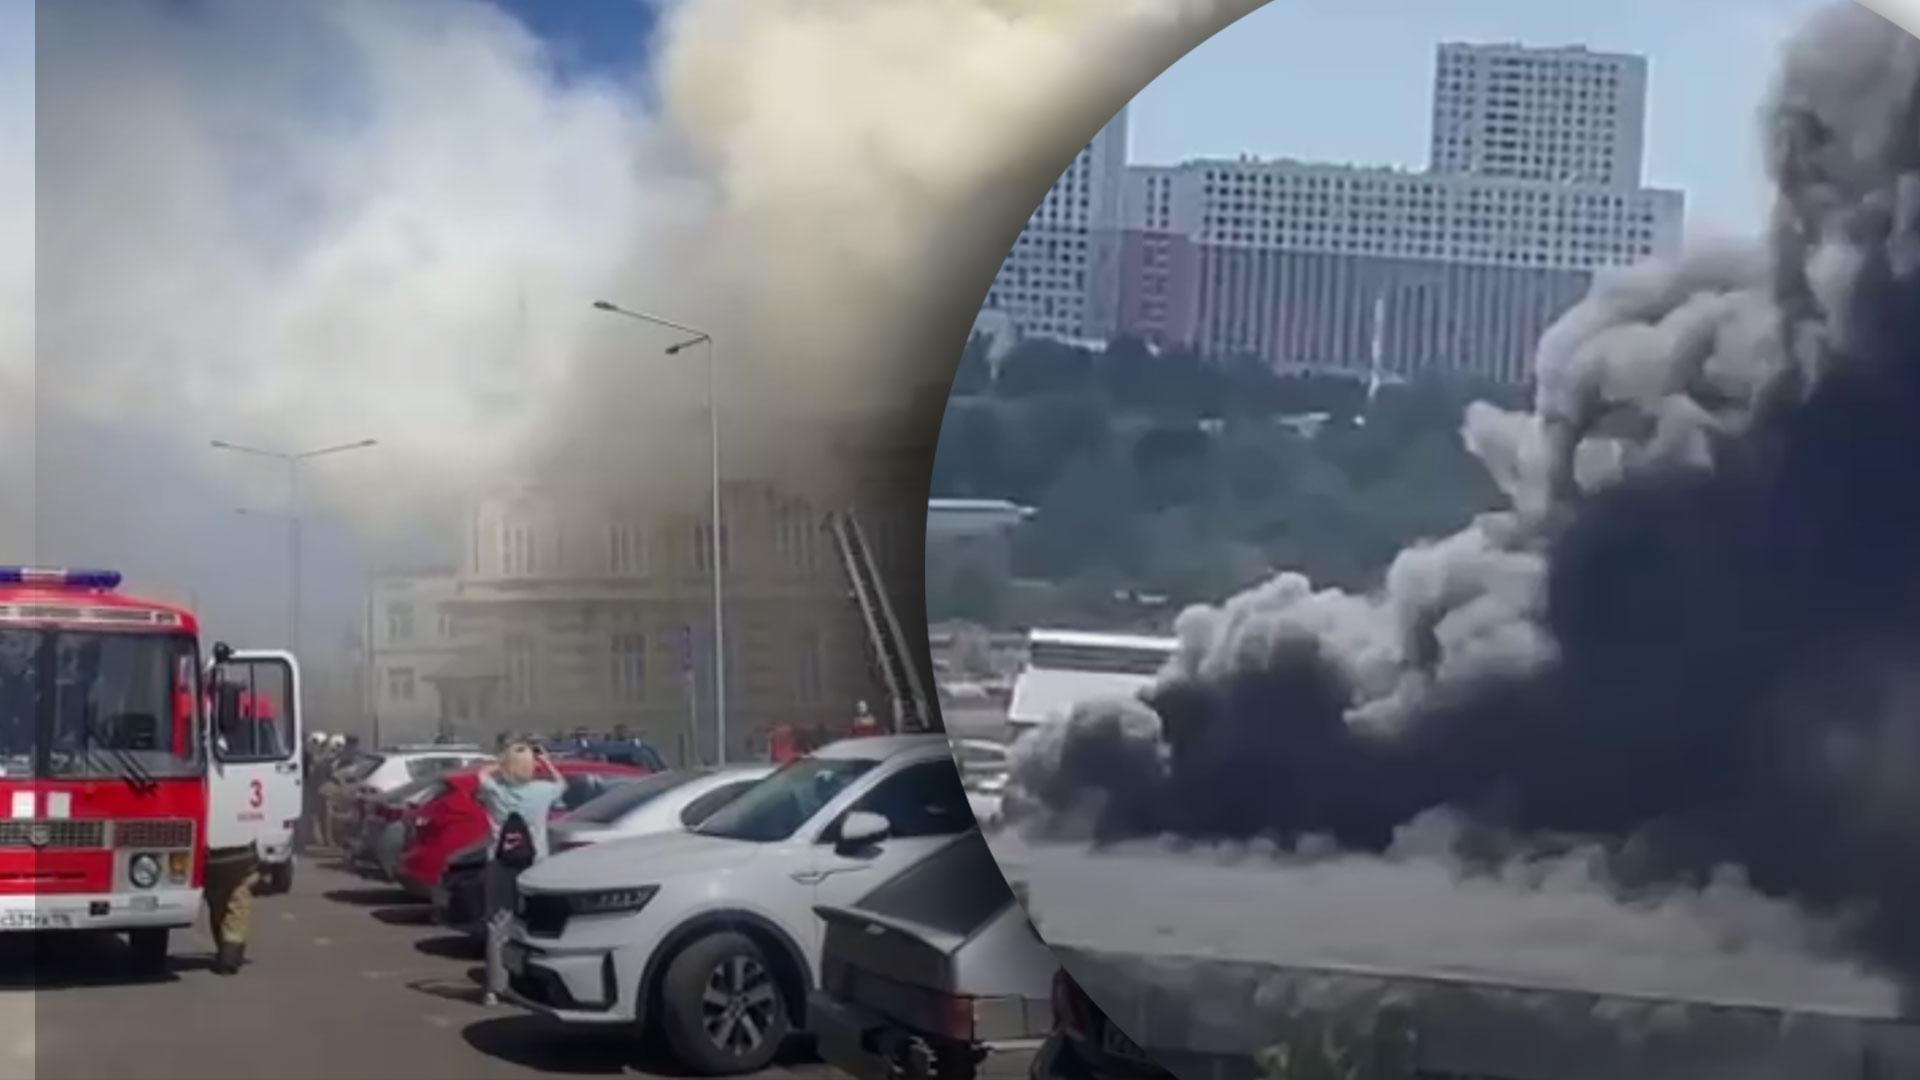 Ні дня без пожежі: у Росії палає завод під Москвою і артрезиденція у Казані – епічні відео